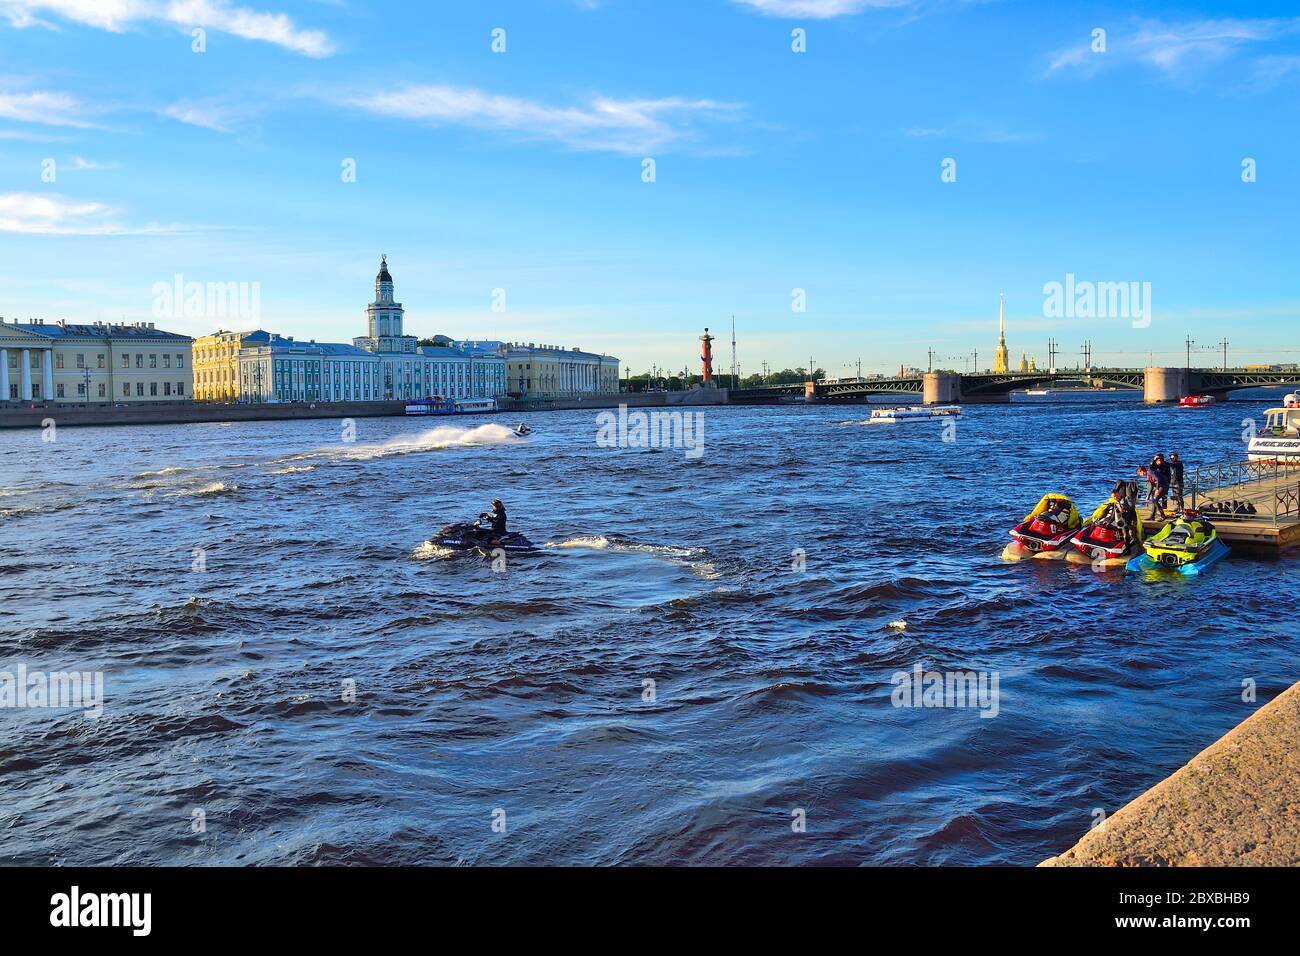 St. Petersburg, Russland - 13. Juni 2019: Bootsfahrten und Ausflüge für Touristen auf dem Neva-Fluss mit Start-und Jet-Ski. Junge Jungs auf Jet-Ski oder wa Stockfoto